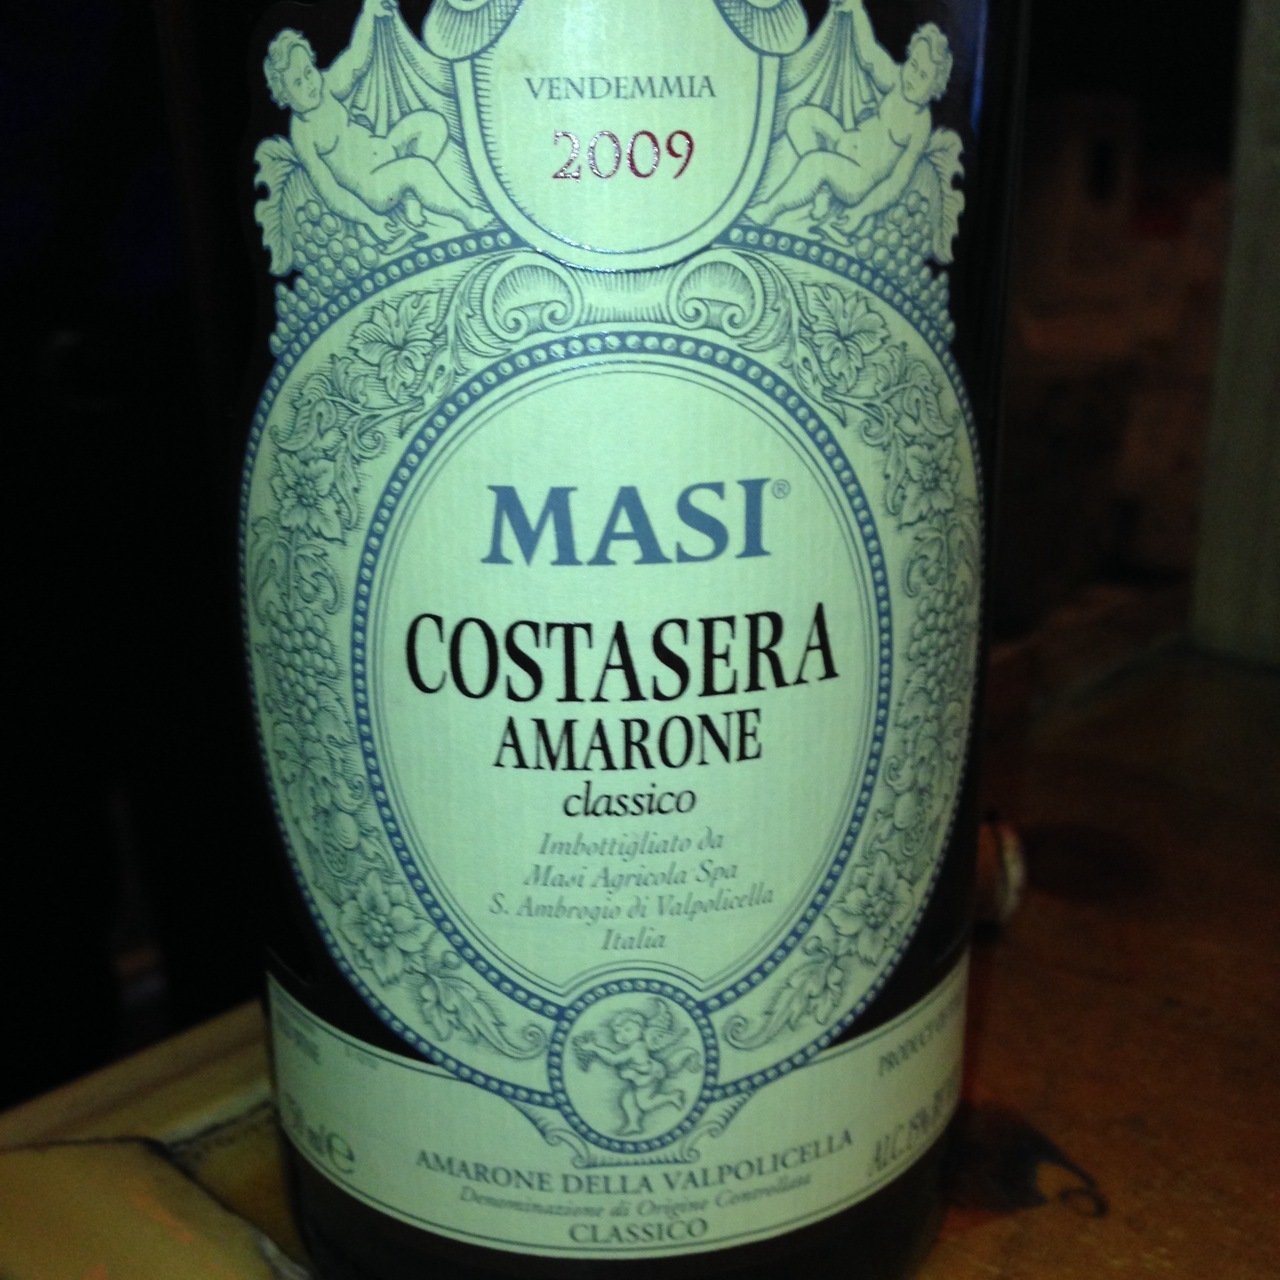 2015 Masi Amarone Costasera Classico - click image for full description